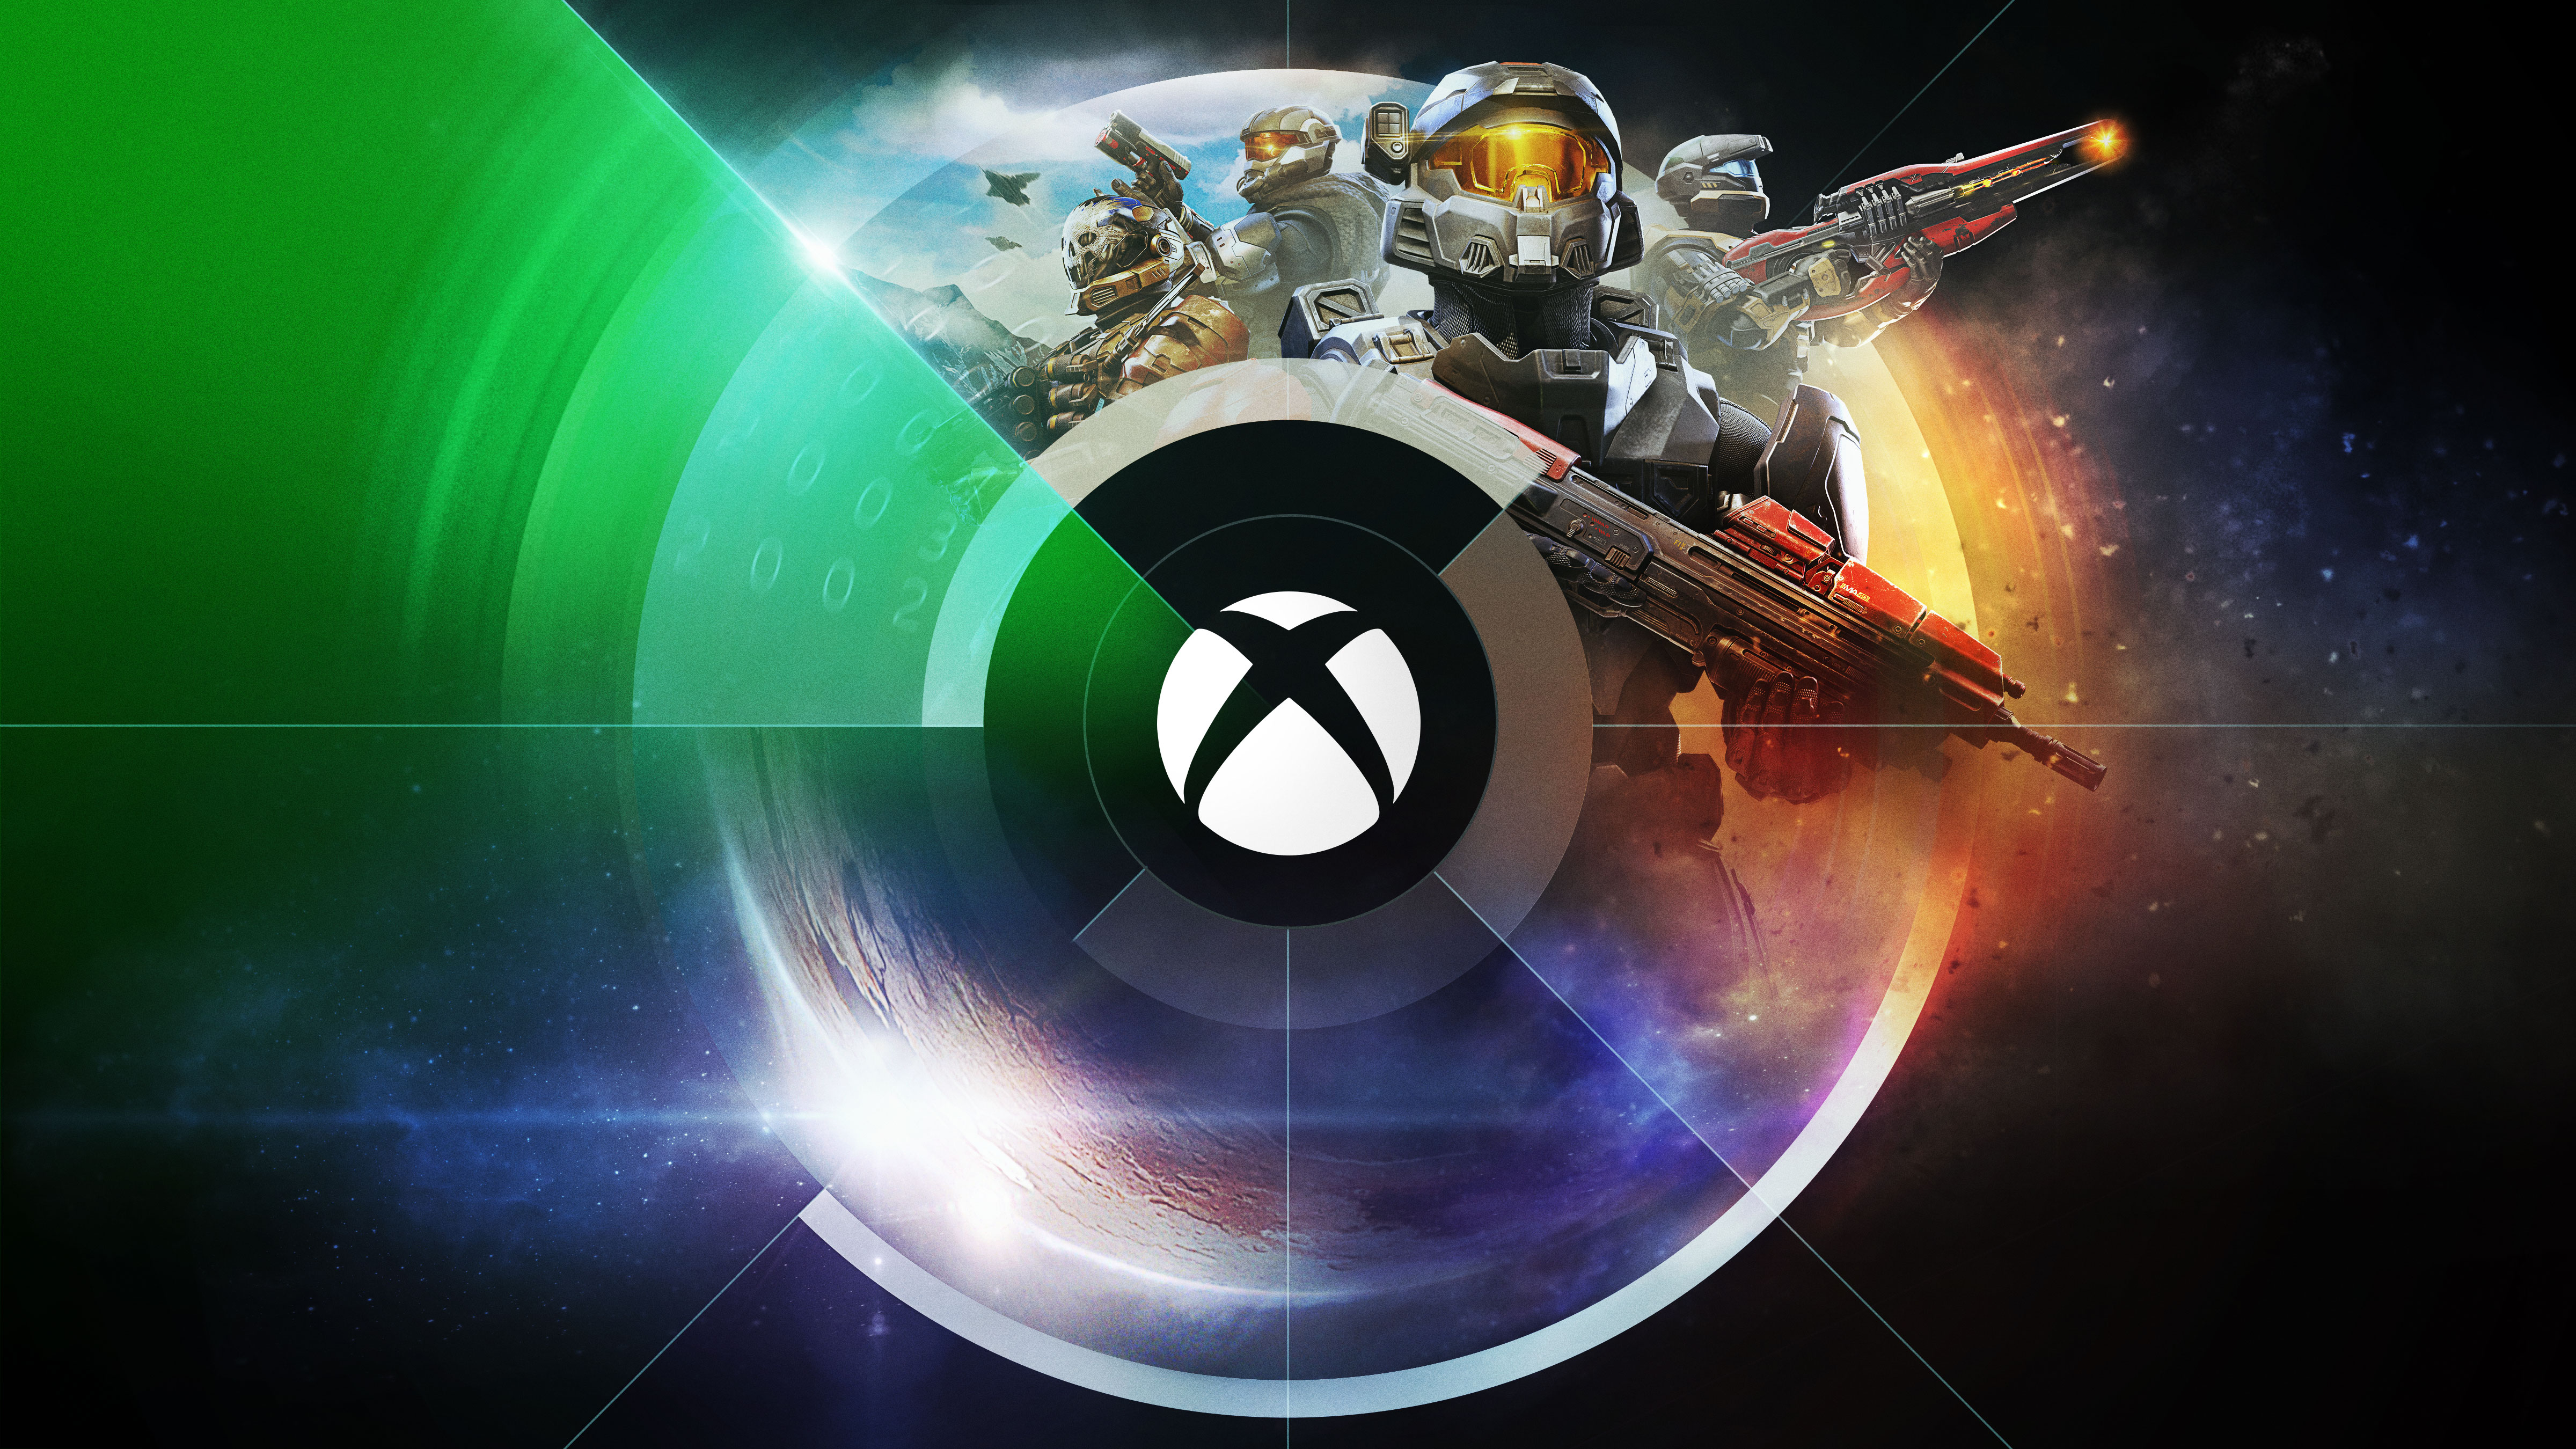 S.T.A.L.K.E.R. 2 is Coming to Xbox Series X - Xbox Wire